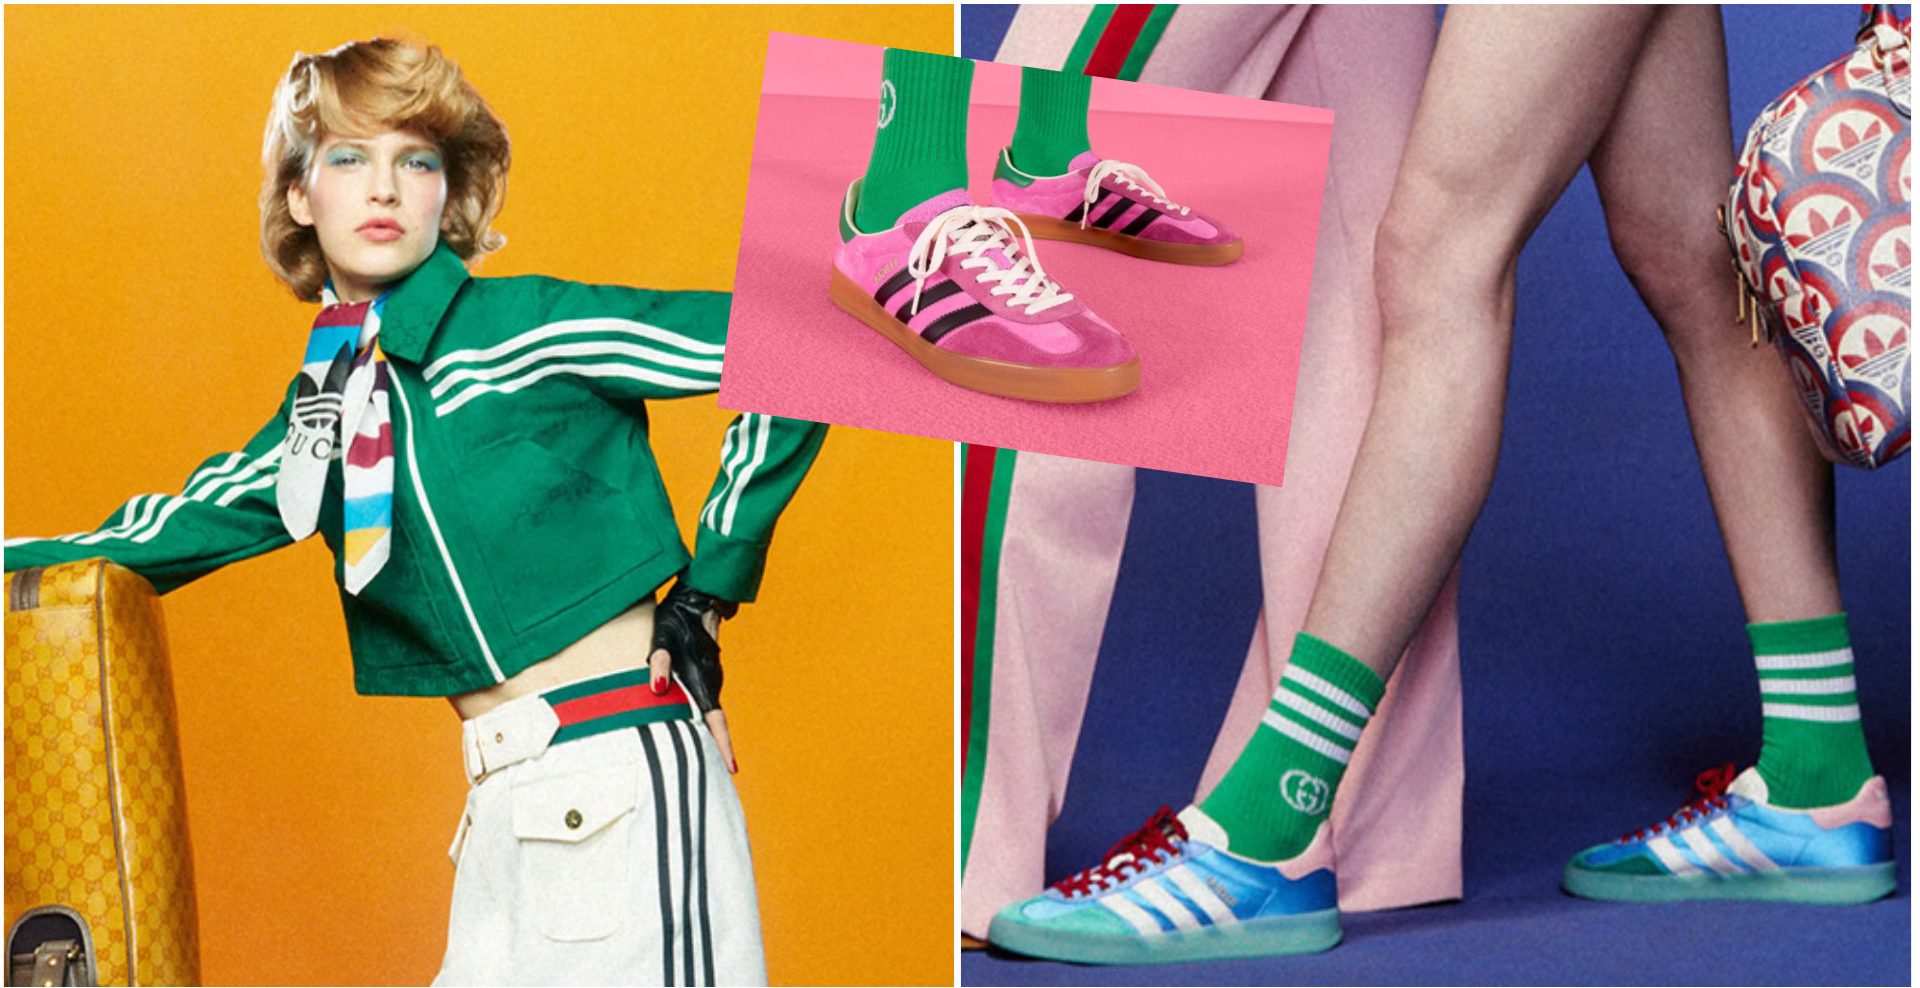 Adidas Gazelle patike su nastale još 1968, a ovog proleća ceo grad će ih nositi